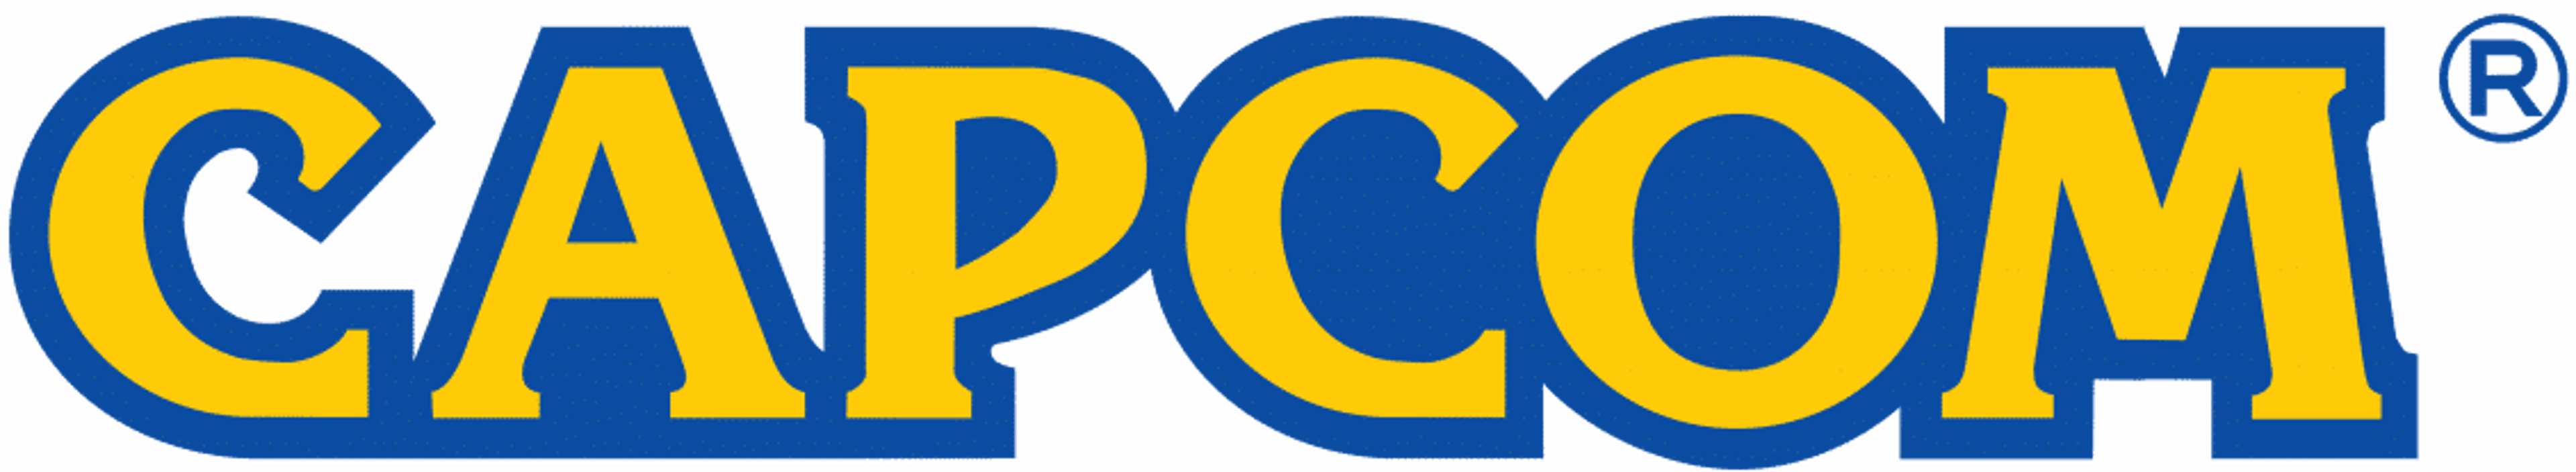 Capcom in difficoltà economica licenzia 50 dipendenti Copertina